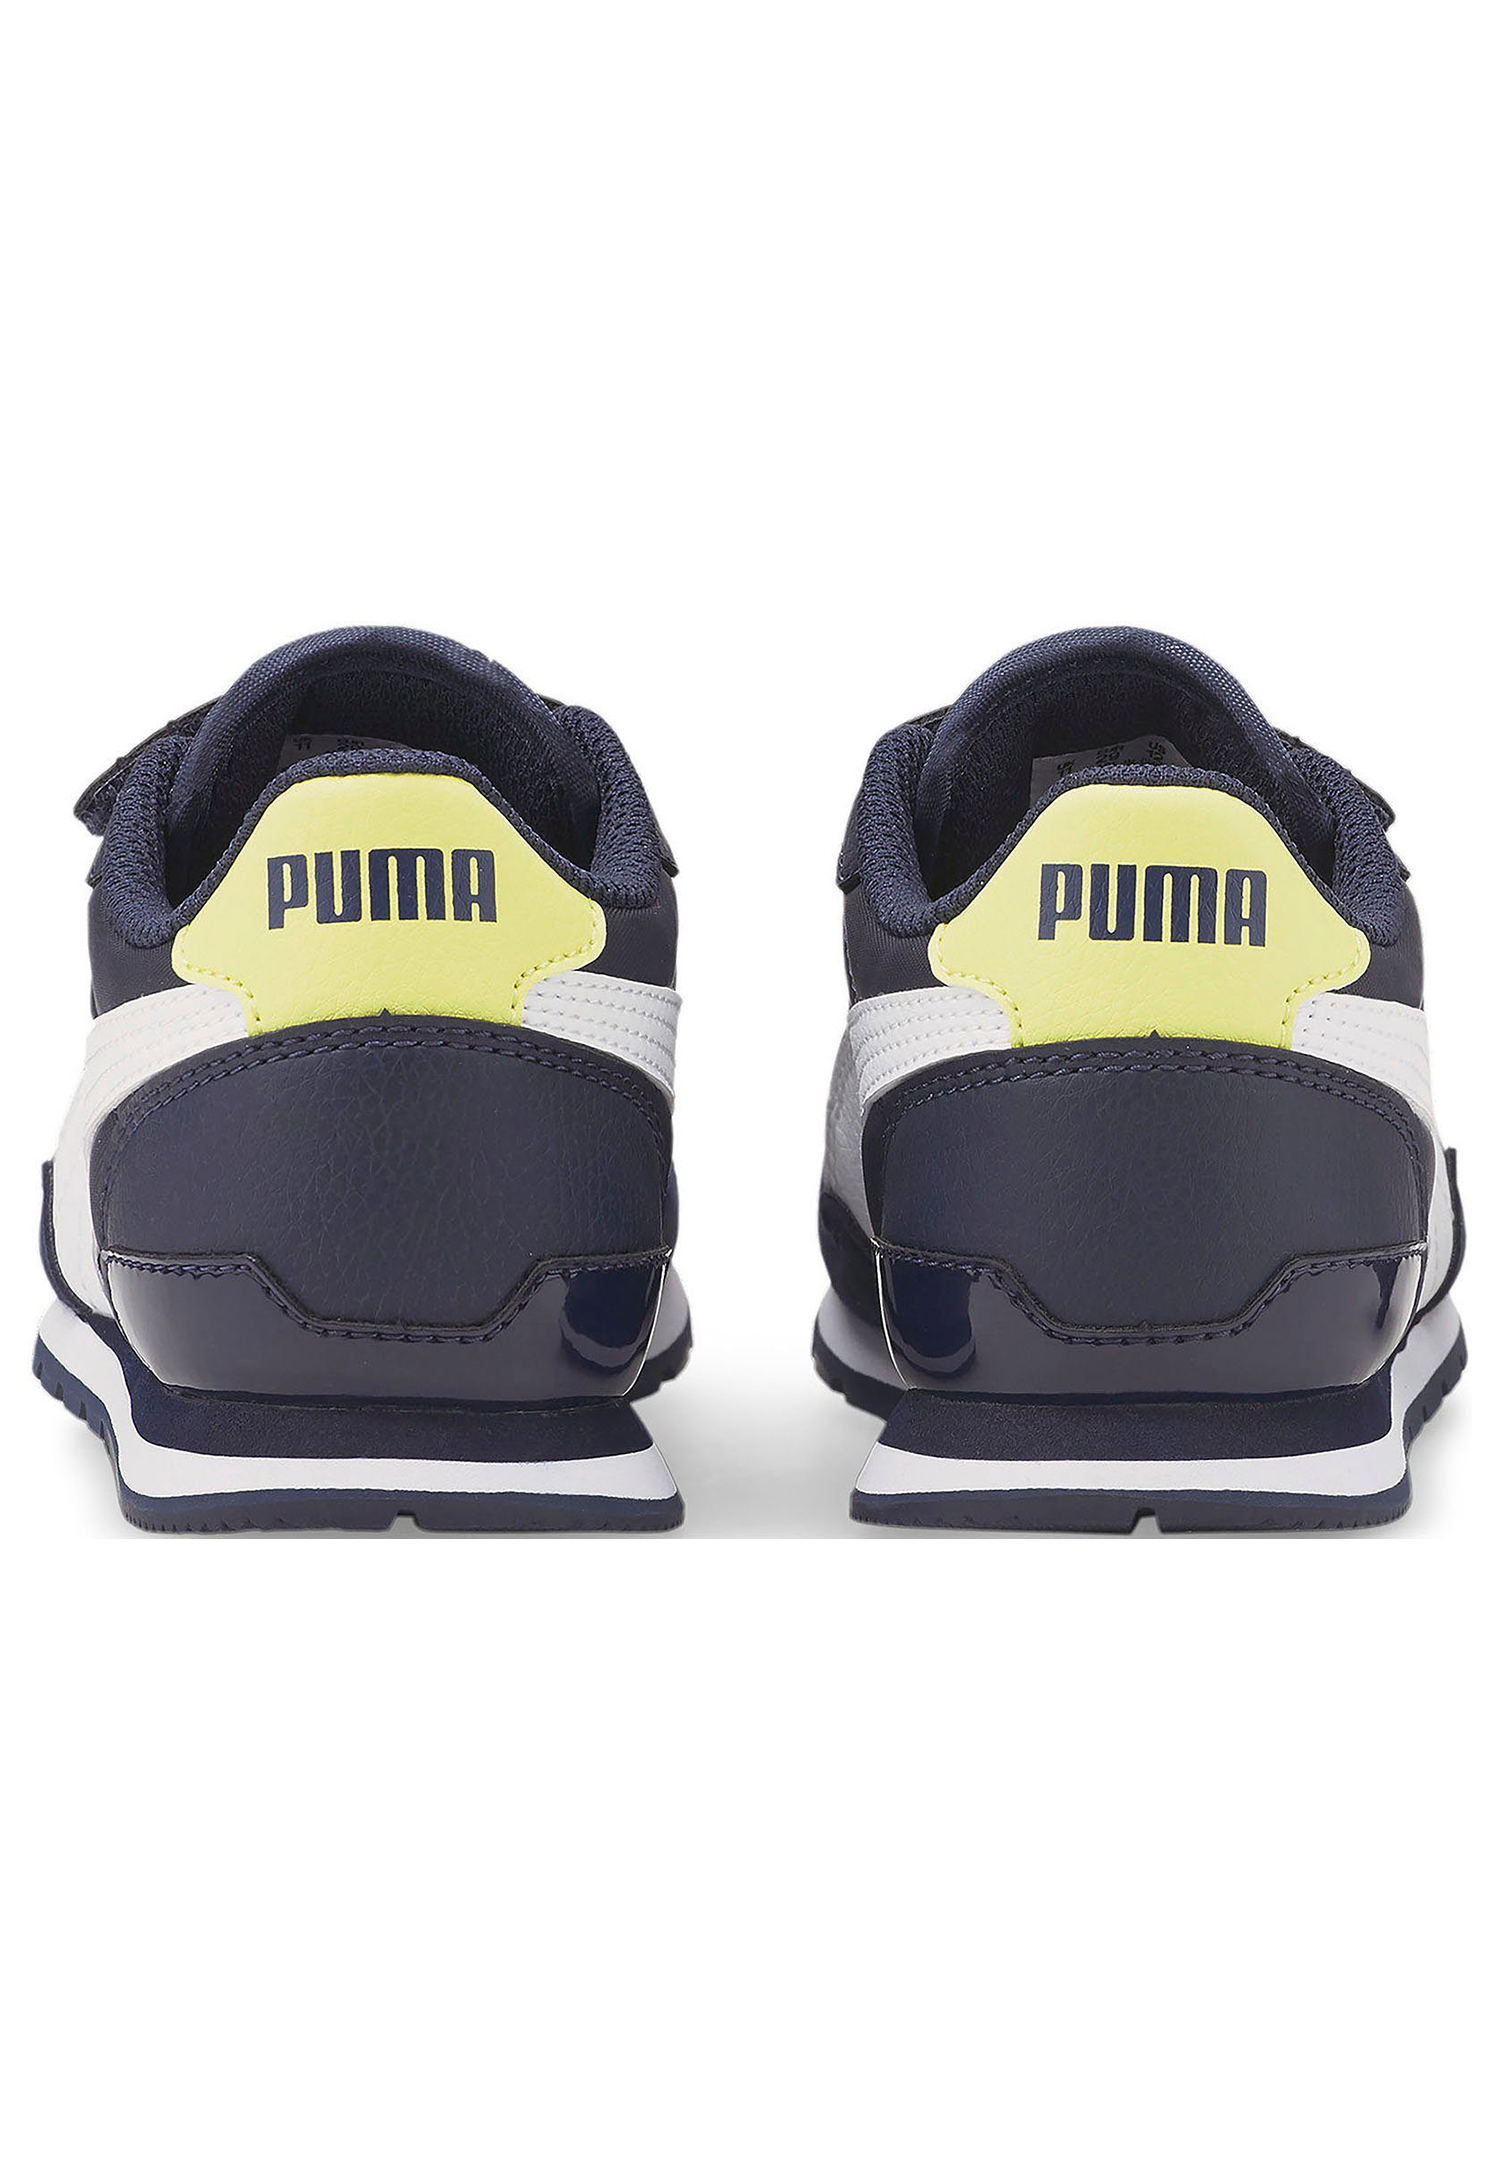 Puma Kinder ST Runner V3 NL V PS Unisex Kinder Sneaker Sportschuh 384902 02 blau